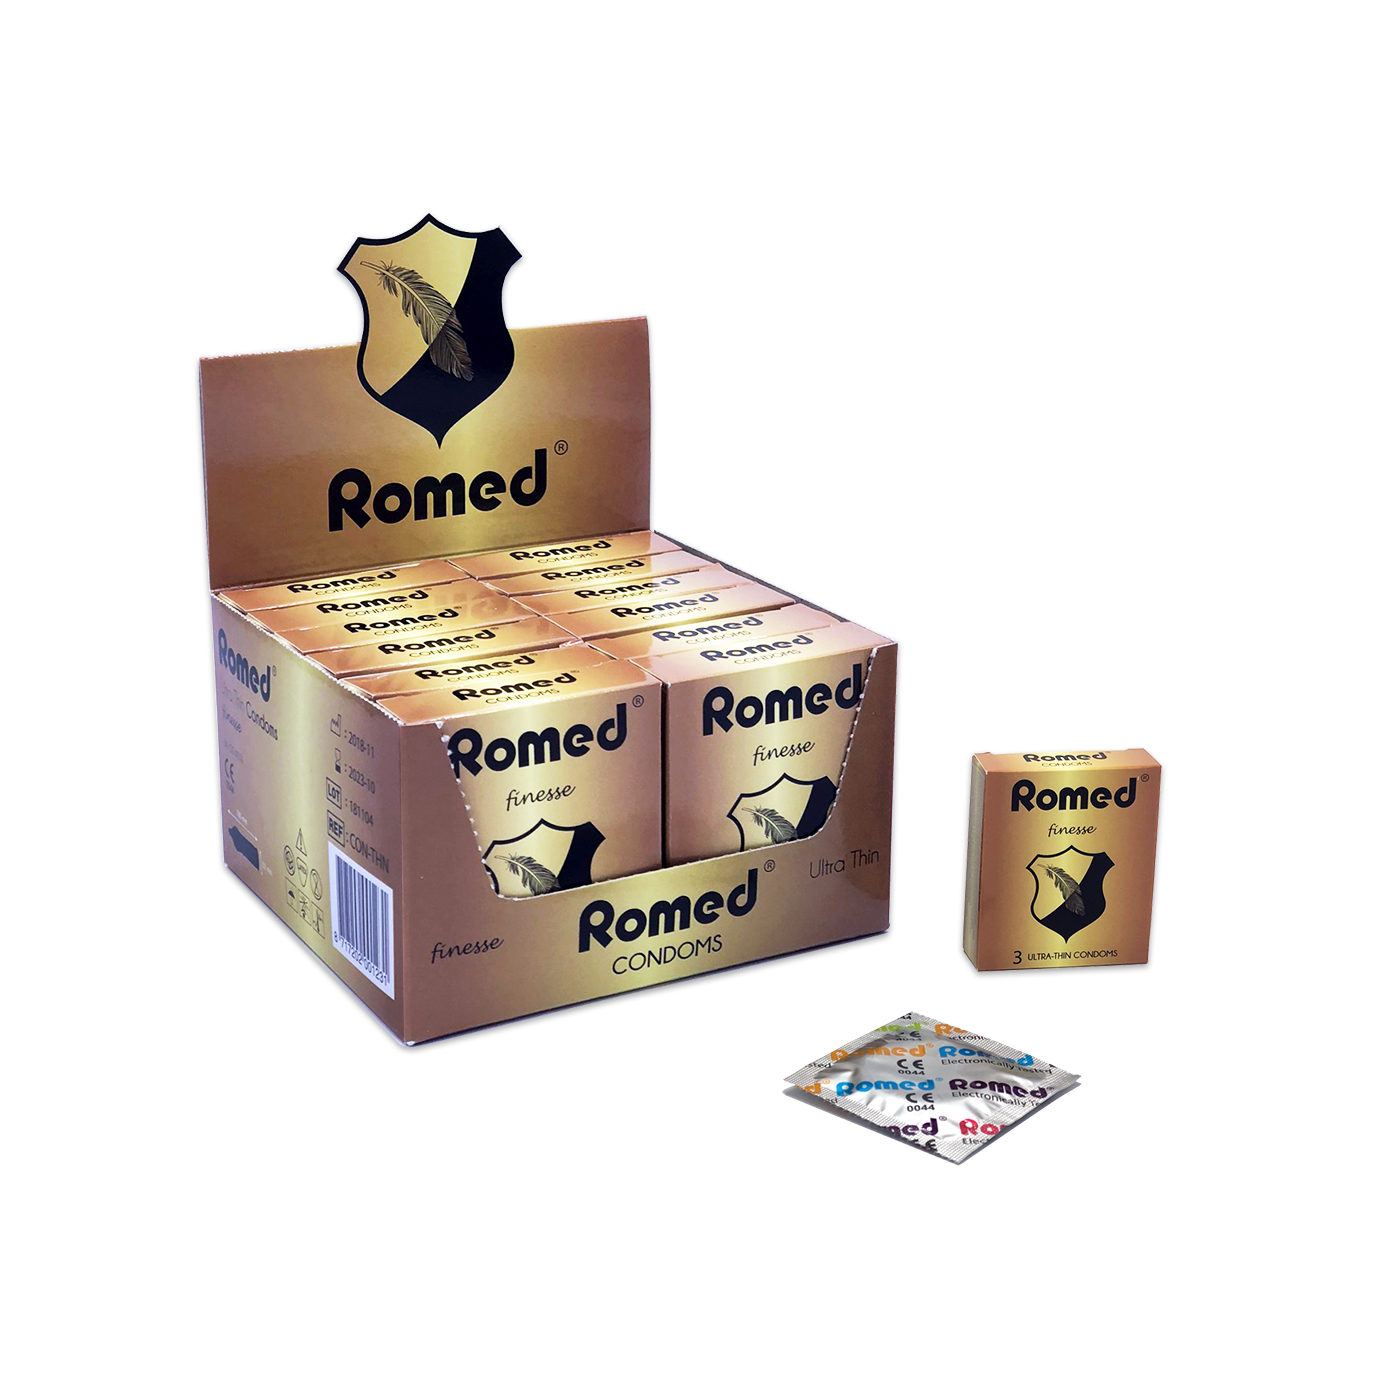 CON-THN Romed condooms extra dun, verpakt per 3 stuks in een envelopje, in cellofaan, 48 envelopjes van 3 stuks = 144 stuks in binnendoosje (= 1 gros), 30 x 144 stuks = 4.320 stuks in een karton.